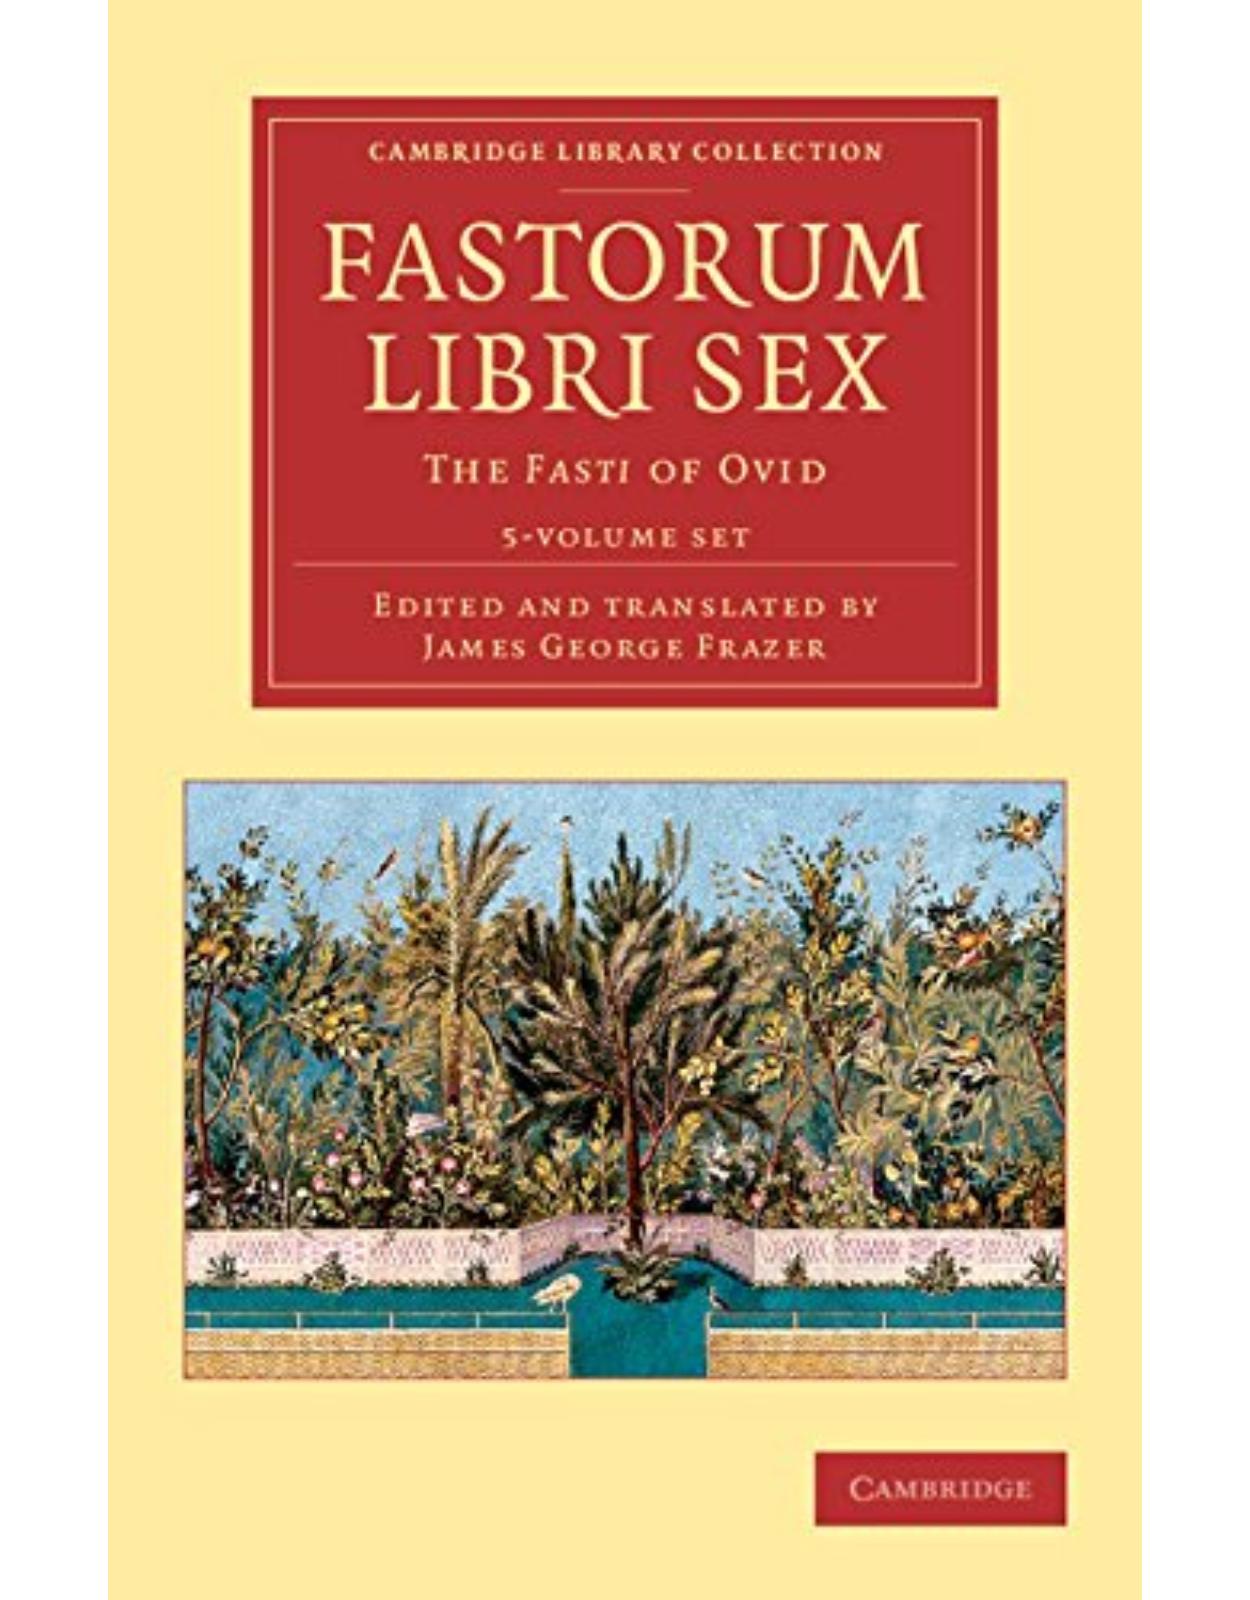 Fastorum libri sex 5 Volume Set: The Fasti of Ovid (Cambridge Library Collection - Classics)